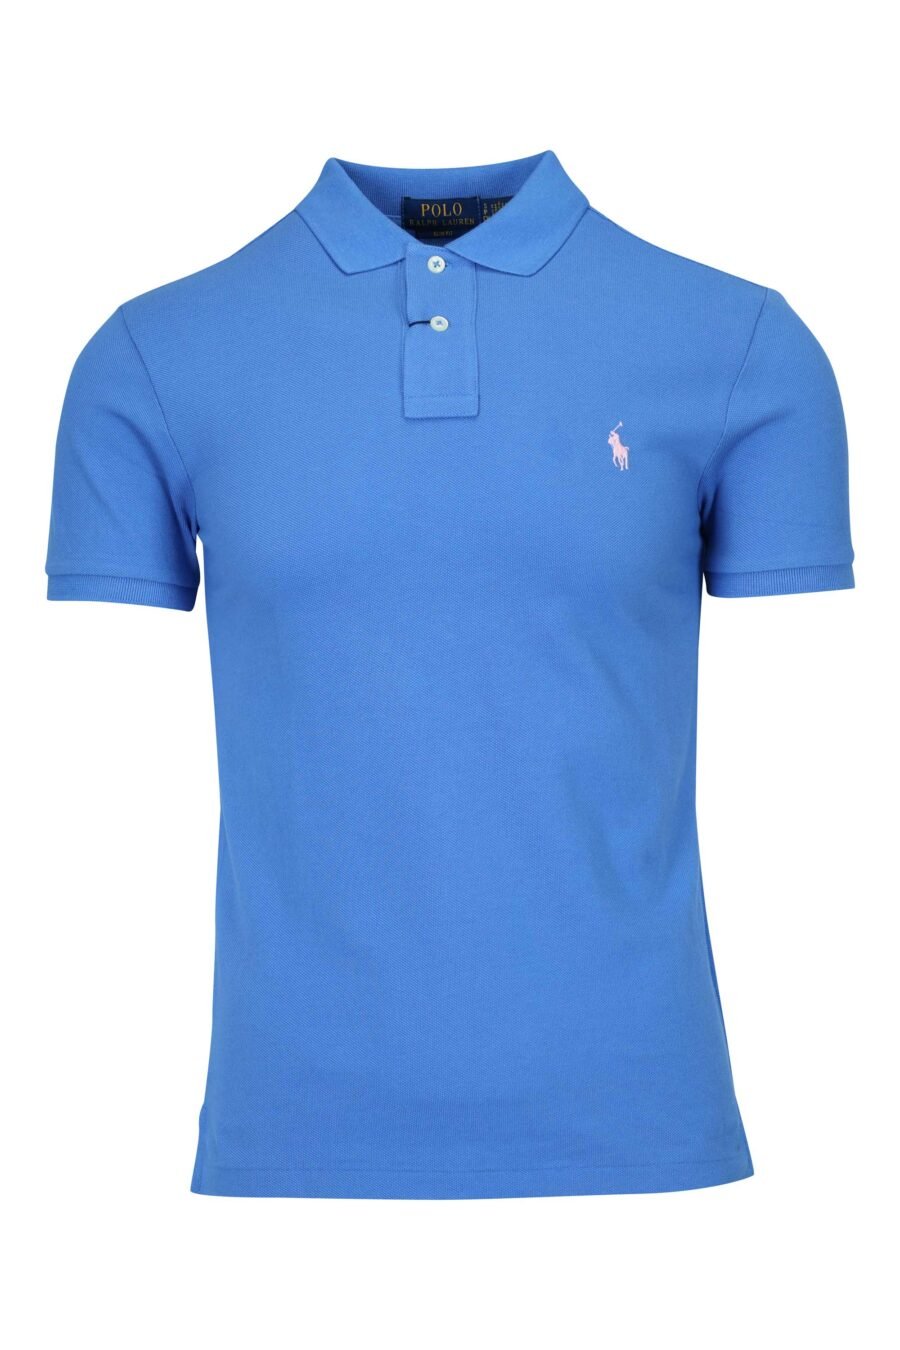 Blaues und rosa T-Shirt mit Mini-Logo "Polo" - 3616536089159